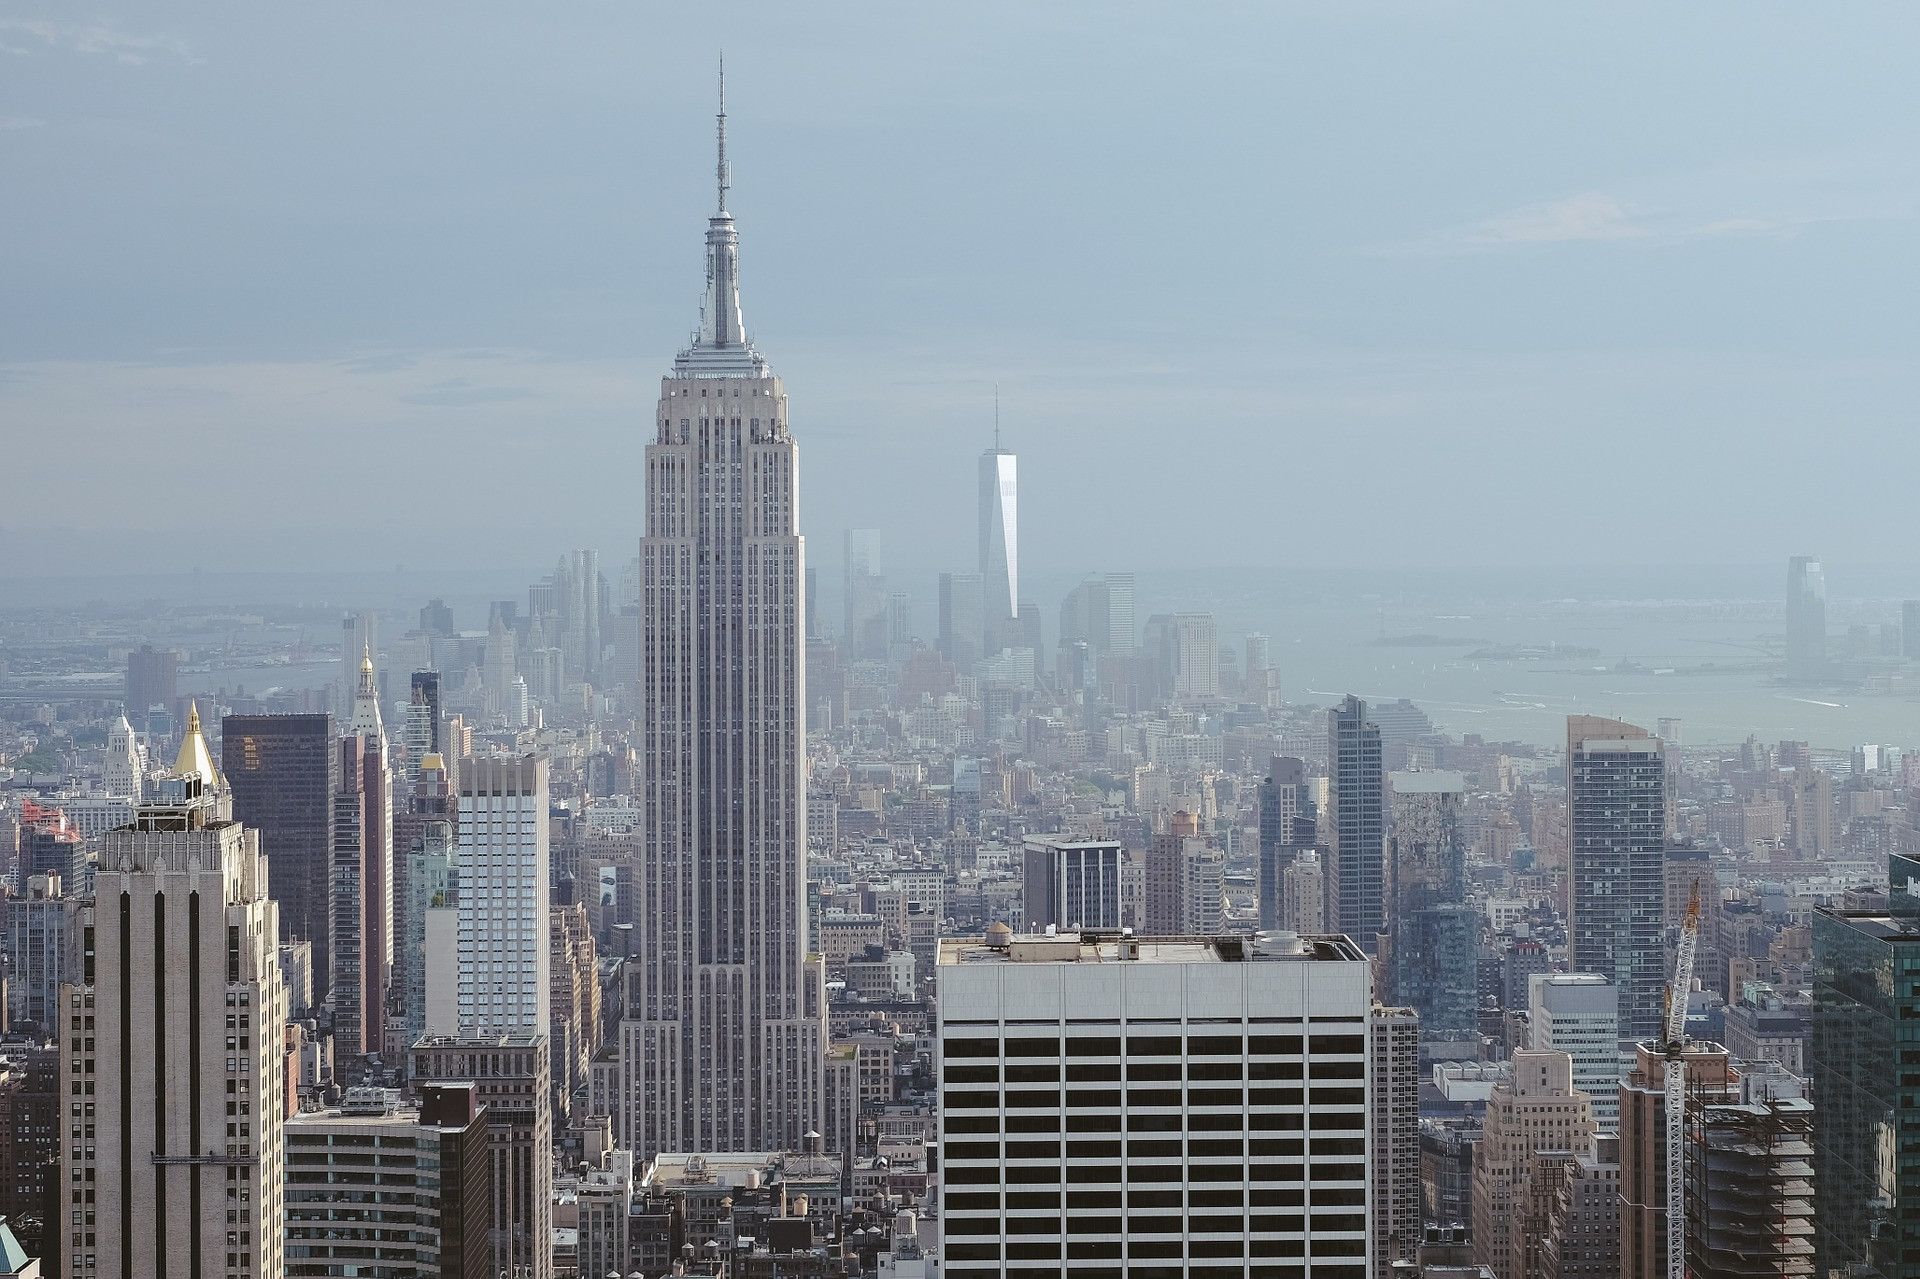 Tento mrakodrap ponúka panoramatický výhľad na New York z výhliadkových poschodí - 86. a 102. Počas jasného dňa môžu návštevníci vidieť až päť štátov - New York, New Jersey, Pennsylvania, Connecticut a Massachusetts. Najrušnejšie je tu pri západe slnka. Predbehnúť rady je možné pomocou prednostných prehliadkových vstupeniek, ktorých cena začína 55 eur.